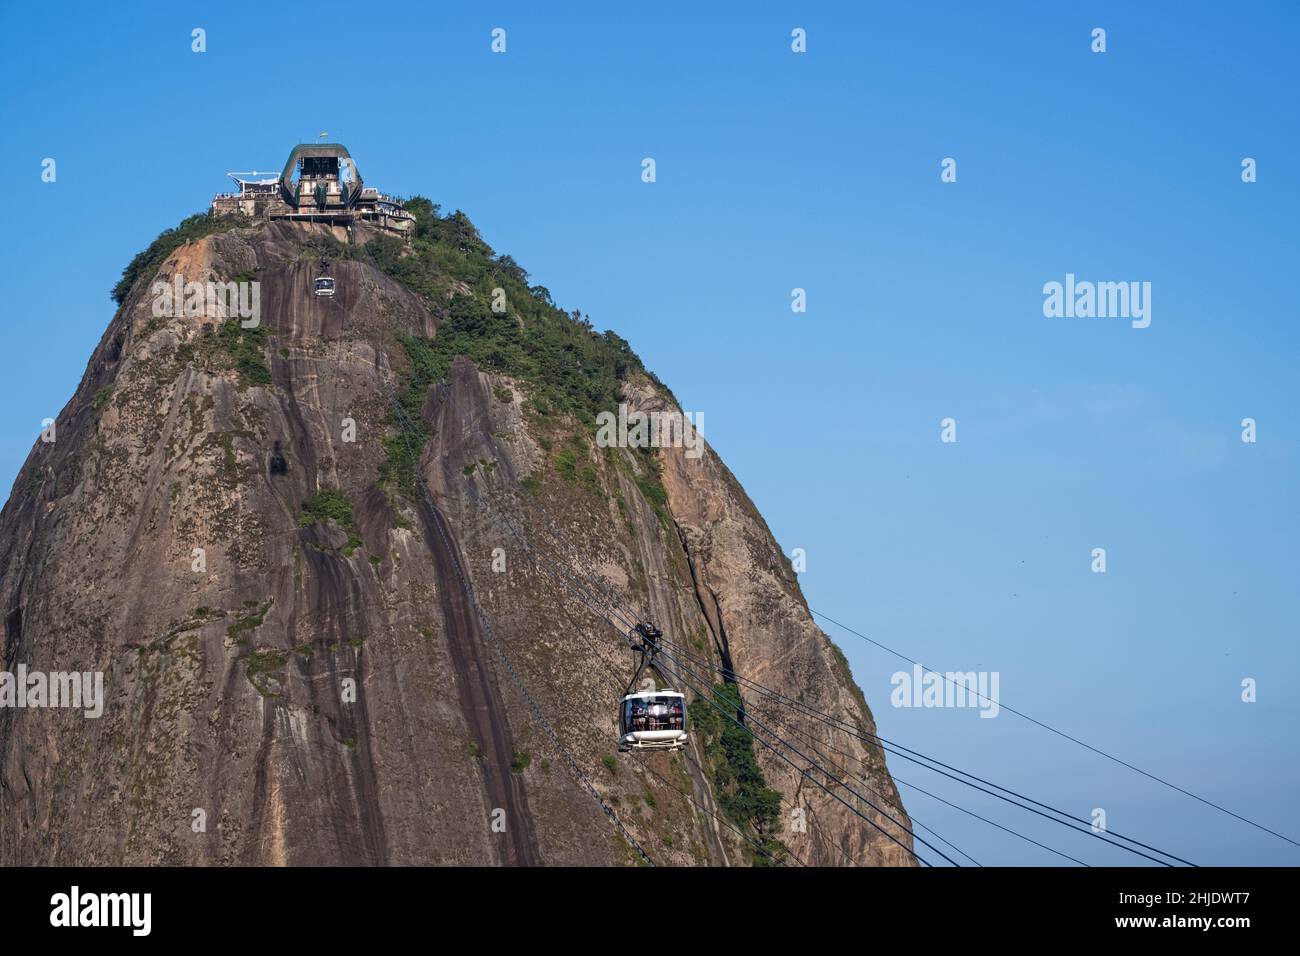 Funivie sul Pan di zucchero, cielo blu chiaro, nessuna gente, spazio copia, Rio de Janeiro, Brasile Foto Stock